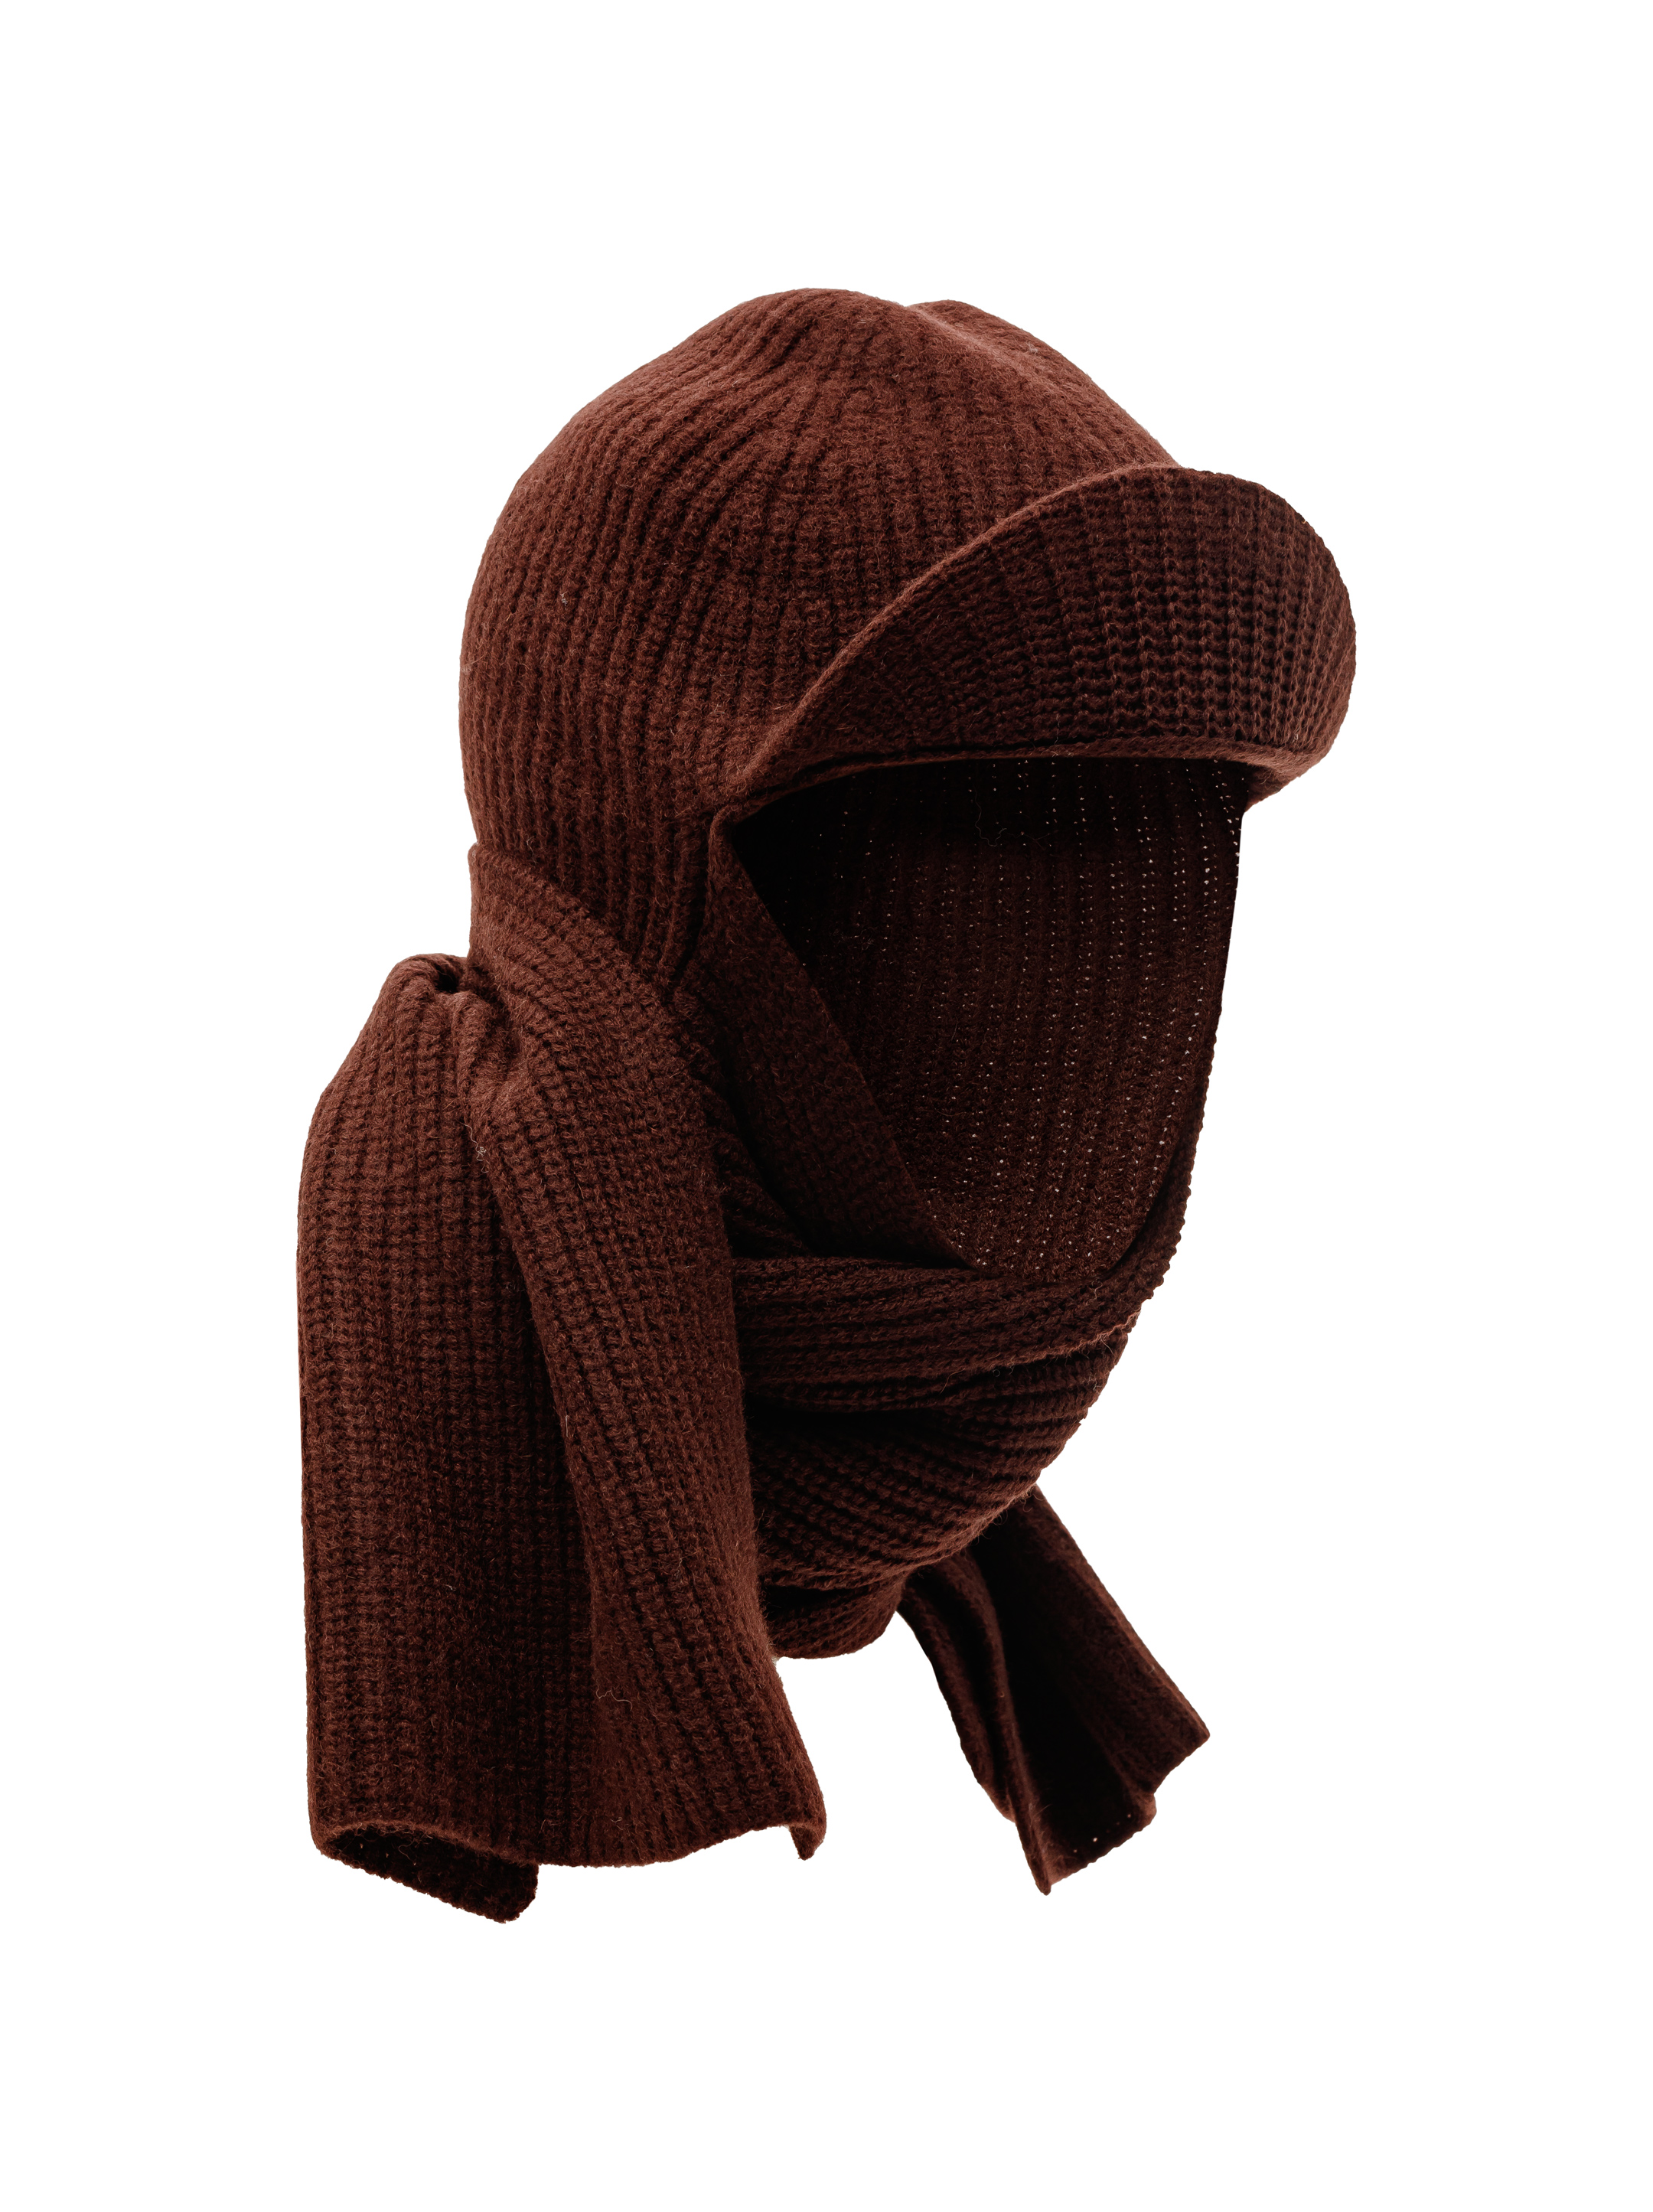 Шапка-шарф из смесового кашемира черный, ONE SIZE: купить в интернет-магазине одежды Around